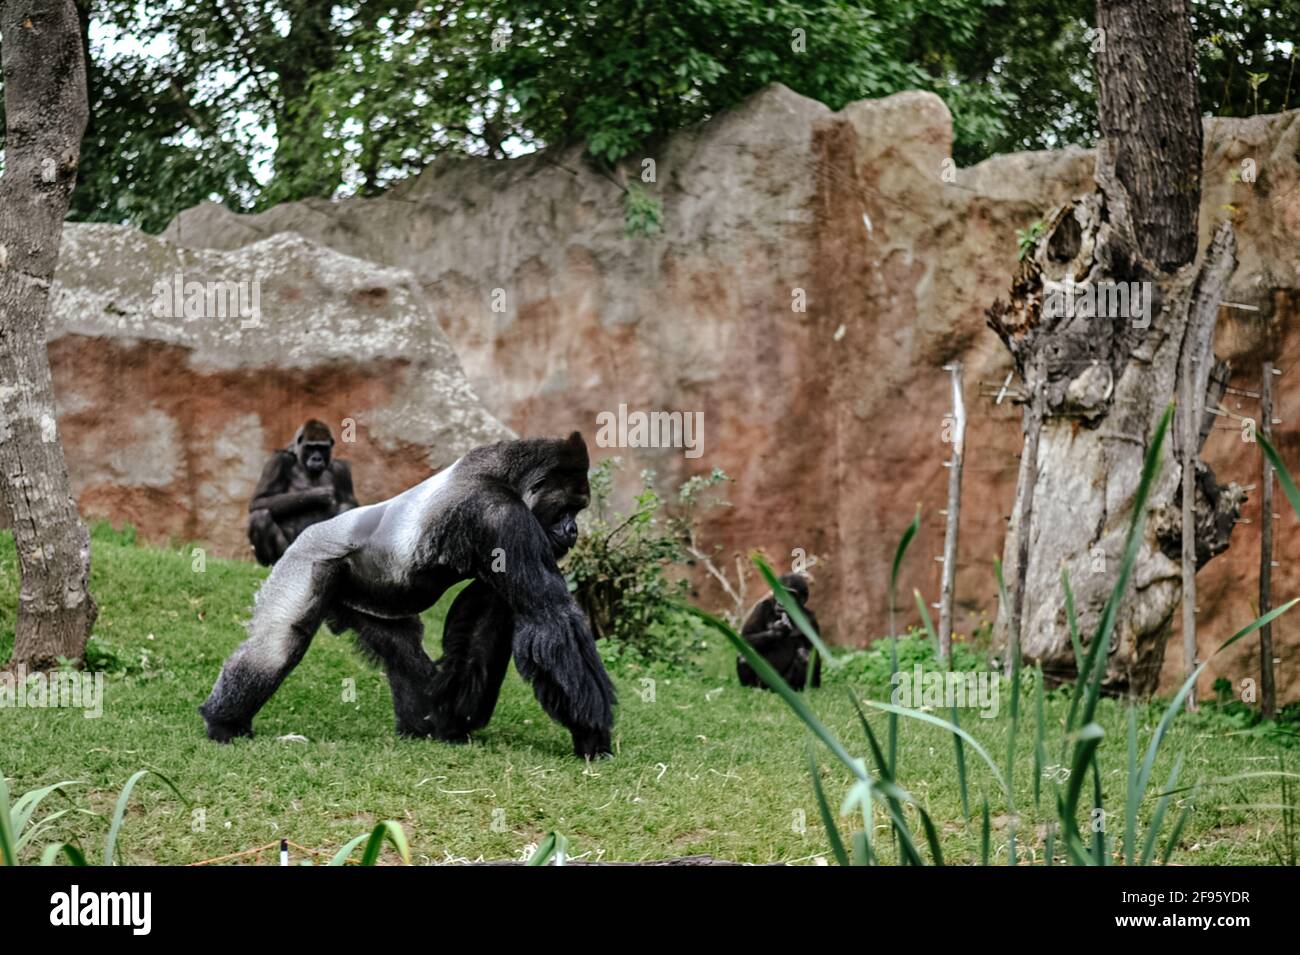 Animaux intelligents, les gorilles partagent 98.3% de leur ADN Banque D'Images